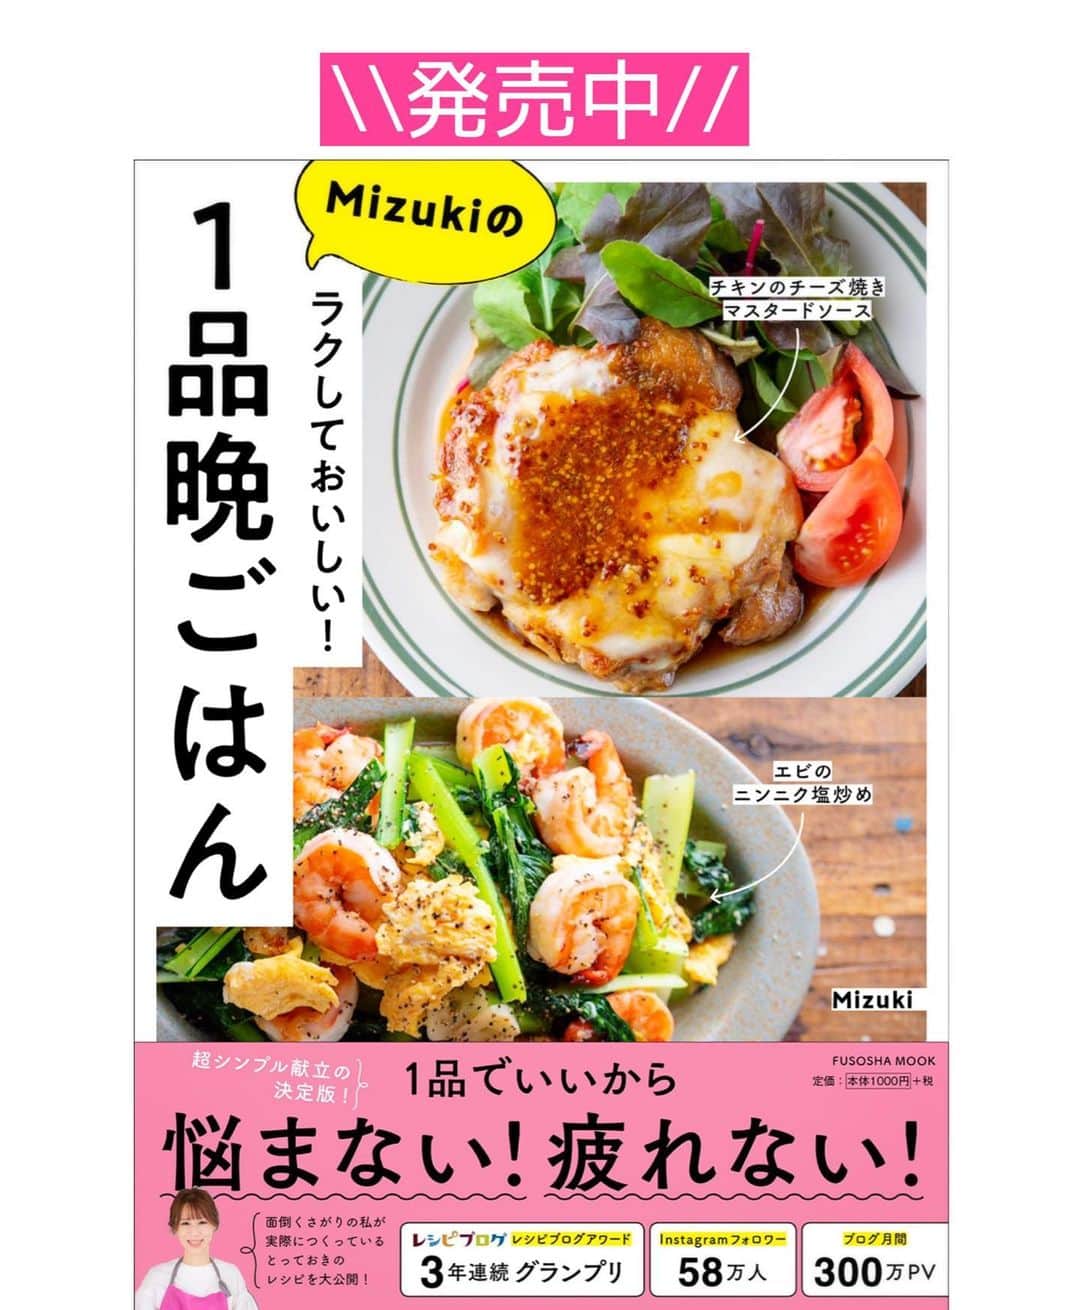 Mizuki【料理ブロガー・簡単レシピ】さんのインスタグラム写真 - (Mizuki【料理ブロガー・簡単レシピ】Instagram)「・﻿ 【#レシピ 】ーーーーーーーー﻿ ♡鶏肉と白菜のクリーム煮♡﻿ ーーーーーーーーーーーーーー﻿ ﻿ ﻿ ﻿ おはようございます(*^^*)﻿ ﻿ 今日ご紹介させていただくのは﻿ \\ 鶏肉と白菜のクリーム煮 //﻿ ﻿ バター&生クリームを使わずに﻿ しっかり濃厚に仕上げました♡﻿ しかも、フライパンひとつでできる﻿ 簡単お手軽レシピです(*´艸`)﻿ ﻿ このままはもちろん﻿ チーズをのせてグラタンにしたり﻿ ドリアにしてもおいしいですよ〜♩﻿ よかったらお試し下さいね(*^^*)﻿ ﻿ ﻿ ﻿ ＿＿＿＿＿＿＿＿＿＿＿＿＿＿＿＿＿＿＿＿﻿ 【2人分】﻿ 鶏もも肉...1枚(250g)﻿ 塩こしょう...少々﻿ 白菜...1/6個(250g)﻿ 玉ねぎ...1/4個﻿ サラダ油...小2﻿ 薄力粉...大1.5﻿ 牛乳...250ml﻿ ●コンソメ...大1/2﻿ ●粉チーズ...大1﻿ ﻿ 1.鶏肉は3cm大に切って塩こしょうを振る。白菜の芯は1cm幅、葉はざく切りにする。玉ねぎは薄切りにする。﻿ 2.フライパンにサラダ油を中火で熱し、鶏肉を両面焼き色が付くまで焼く。続けて白菜と玉ねぎを加えてしんなりするまで炒める。﻿ 3.薄力粉を加え、弱めの中火で1分炒める。粉っぽさがなくなったら牛乳を3回に分けて加え、その都度よく混ぜる。﻿ 4.仕上げに●を加え、とろみが付くまで2分程煮る。﻿ ￣￣￣￣￣￣￣￣￣￣￣￣￣￣￣￣￣￣￣￣﻿ ﻿ ﻿ ﻿ ﻿ 《ポイント》﻿ ♦︎鶏肉は両面しっかり焼き色が付くまで焼いて下さい♩﻿ ♦︎粉を加えたら焦げやすくなるので火加減を落として炒めて下さい♩﻿ ﻿ ﻿ ﻿ ﻿ ﻿ ﻿ ﻿ ﻿ 📕新刊発売中📕﻿ 【ラクしておいしい！#1品晩ごはん 】﻿ ￣￣￣￣￣￣￣￣￣￣￣￣￣￣￣￣￣﻿ 私たちだってヘトヘトな日がある•••﻿ 毎日何品も作っていられない•••﻿ もうごはんに悩みたくない😢﻿ そんな時、1品ごはんはいかがでしょう？﻿ というご提案です✨﻿ ﻿ 【1品ごはん】は﻿ 副菜いらずで全てがシンプル！﻿ ￣￣￣￣￣￣￣￣￣￣￣￣￣￣￣￣￣￣﻿ 一品つくるだけでいいから﻿ 献立を考えなくてよし！﻿ ￣￣￣￣￣￣￣￣￣￣￣￣￣￣￣￣￣￣﻿ 悩まない、疲れない、﻿ 気力や時間がなくてもなんとかなる！﻿ ￣￣￣￣￣￣￣￣￣￣￣￣￣￣￣￣￣￣﻿ そんな頼りになる﻿ 便利なお助けごはんです☺️💕﻿ (ハイライトに🔗貼っています✨)﻿ ￣￣￣￣￣￣￣￣￣￣￣￣￣￣￣￣￣﻿ ﻿ ﻿ ﻿ ﻿ ﻿ ⭐️発売中⭐️﻿ ＿＿＿＿＿＿＿＿＿＿＿＿＿＿＿＿＿＿﻿ しんどくない献立、考えました♩﻿ \15分でいただきます/﻿ 📕#Mizukiの2品献立 📕﻿ ﻿ 和食をもっとカジュアルに♩﻿ \毎日のごはんがラクになる/﻿ 📘#Mizukiの今どき和食 📘﻿ ﻿ ホケミレシピの決定版♩﻿ \はじめてでも失敗しない/﻿ 📙#ホットケーキミックスのお菓子 📙﻿ ﻿ NHKまる得マガジンテキスト☆﻿ ホットケーキミックスで﻿ 📗絶品おやつ&意外なランチ📗﻿ ￣￣￣￣￣￣￣￣￣￣￣￣￣￣￣￣￣￣﻿ ﻿ ﻿ ﻿ ＿＿＿＿＿＿＿＿＿＿＿＿＿＿＿＿＿＿﻿ レシピを作って下さった際や﻿ レシピ本についてのご投稿には﻿ タグ付け( @mizuki_31cafe )して﻿ お知らせいただけると嬉しいです😊💕﻿ ￣￣￣￣￣￣￣￣￣￣￣￣￣￣￣￣￣￣﻿ ﻿ ﻿ ﻿ ﻿ #鶏肉#白菜#クリーム煮#生クリームなし#バターなし#Mizuki#簡単レシピ#時短レシピ#節約レシピ#料理#フーディーテーブル#マカロニメイト#おうちごはん#デリスタグラマー#料理好きな人と繋がりたい#おうちごはんlover#写真好きな人と繋がりたい#foodpic#cooking#recipe#lin_stagrammer#foodporn#yummy#f52grams#鶏肉と白菜のクリーム煮m」1月6日 6時57分 - mizuki_31cafe